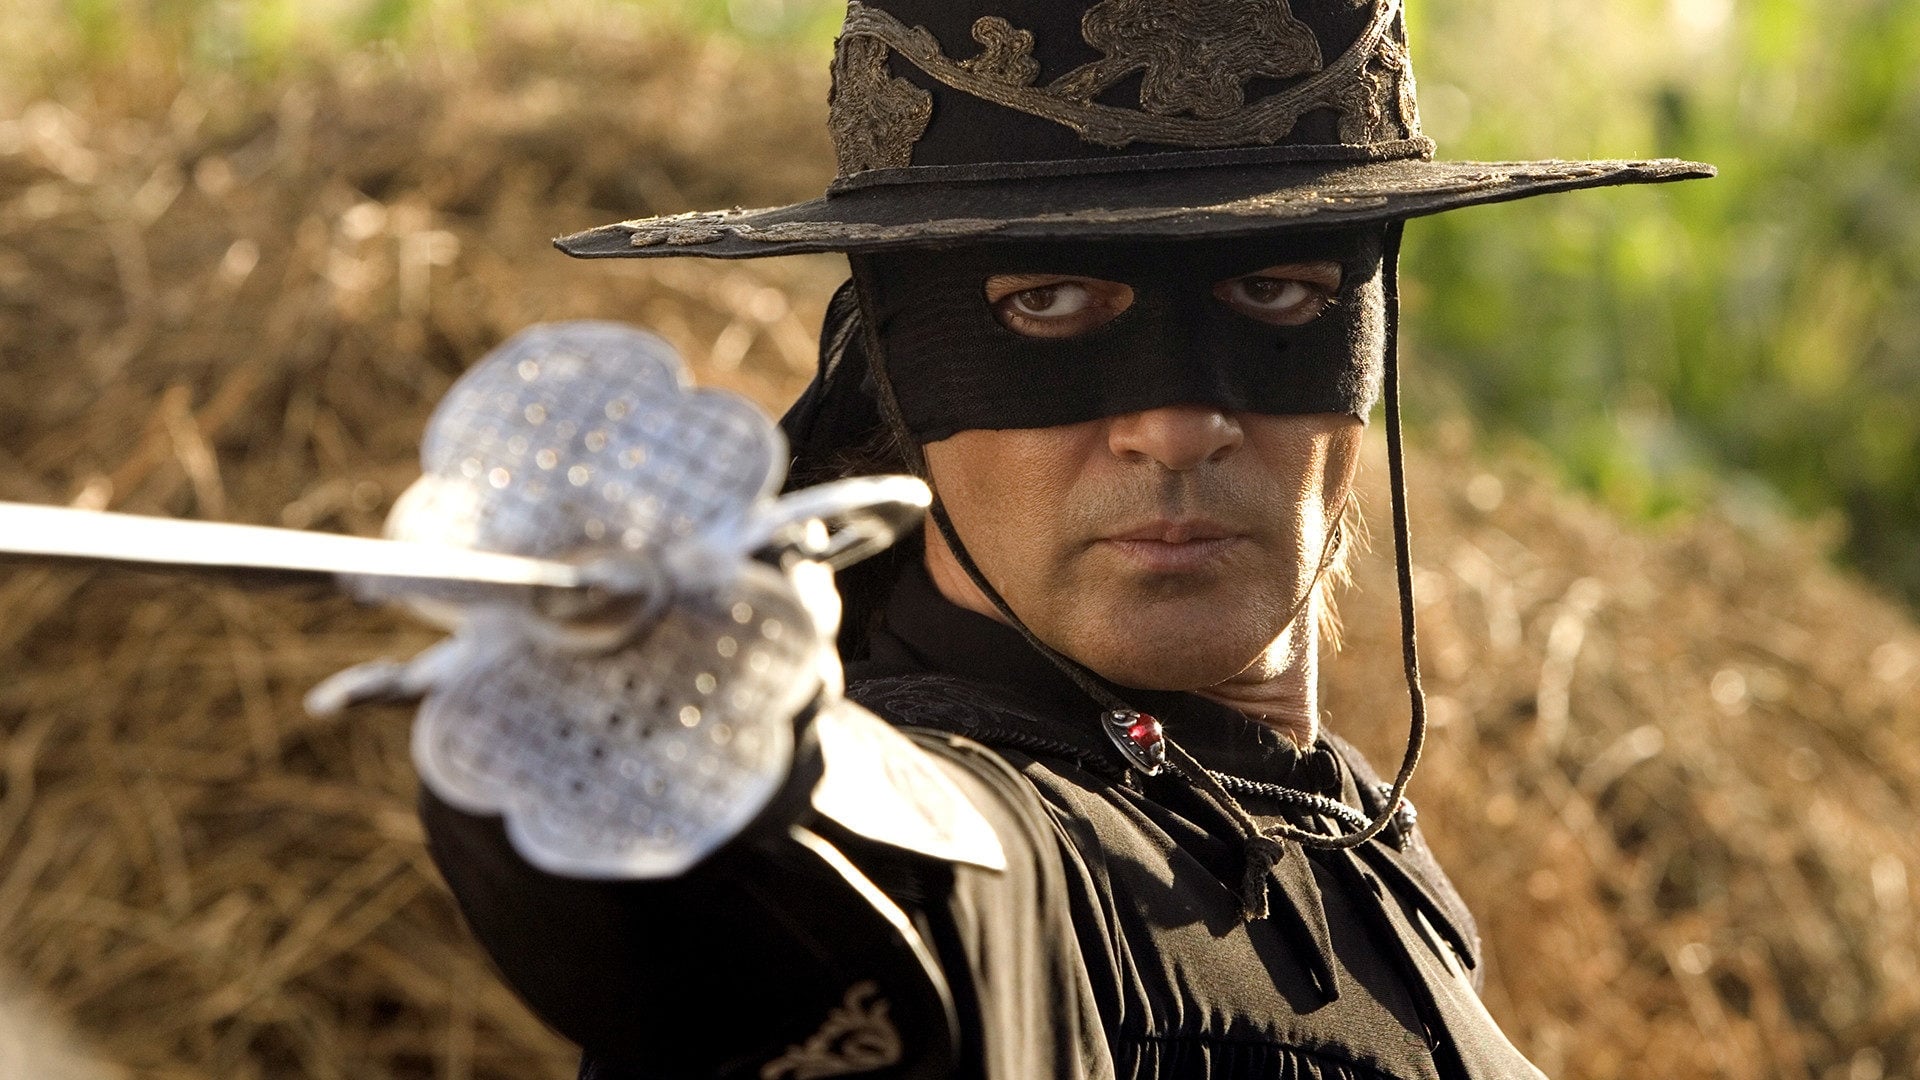 The Legend of Zorro (2005)